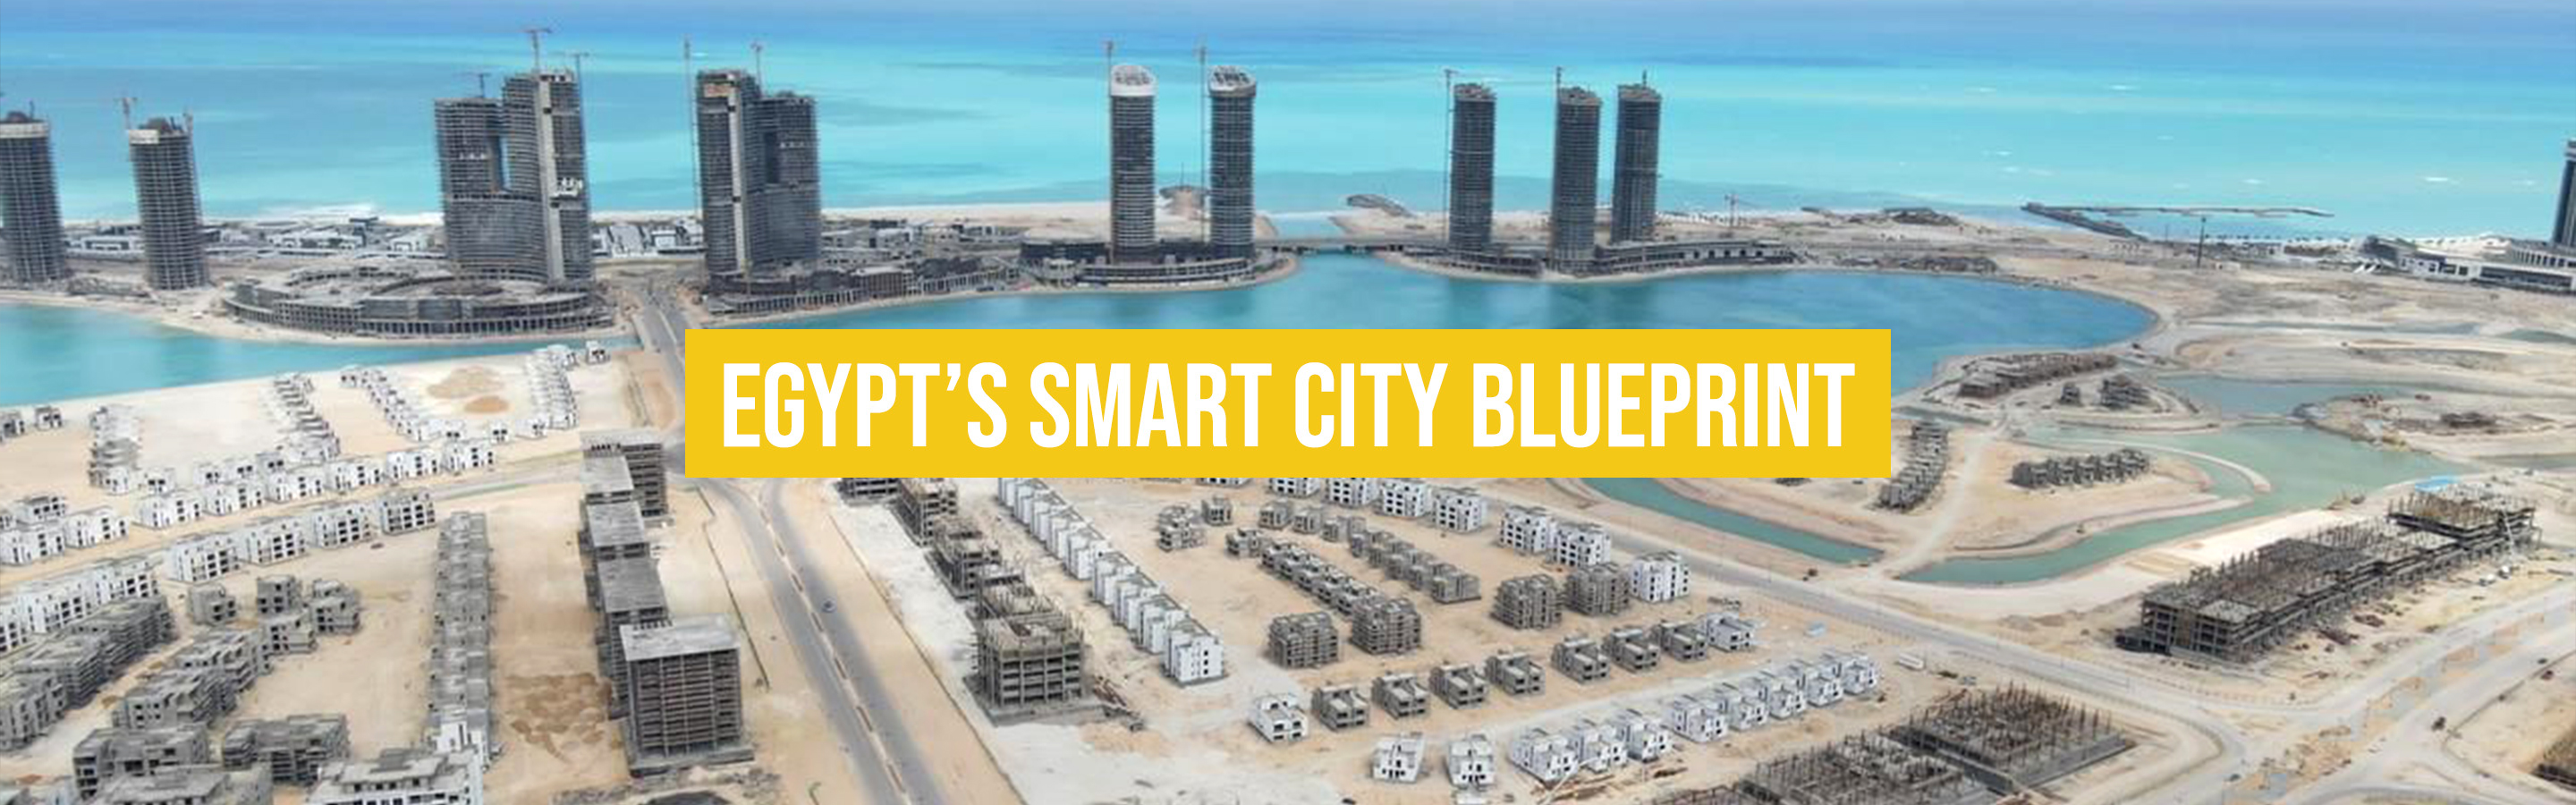 Egypt’s smart city blueprint